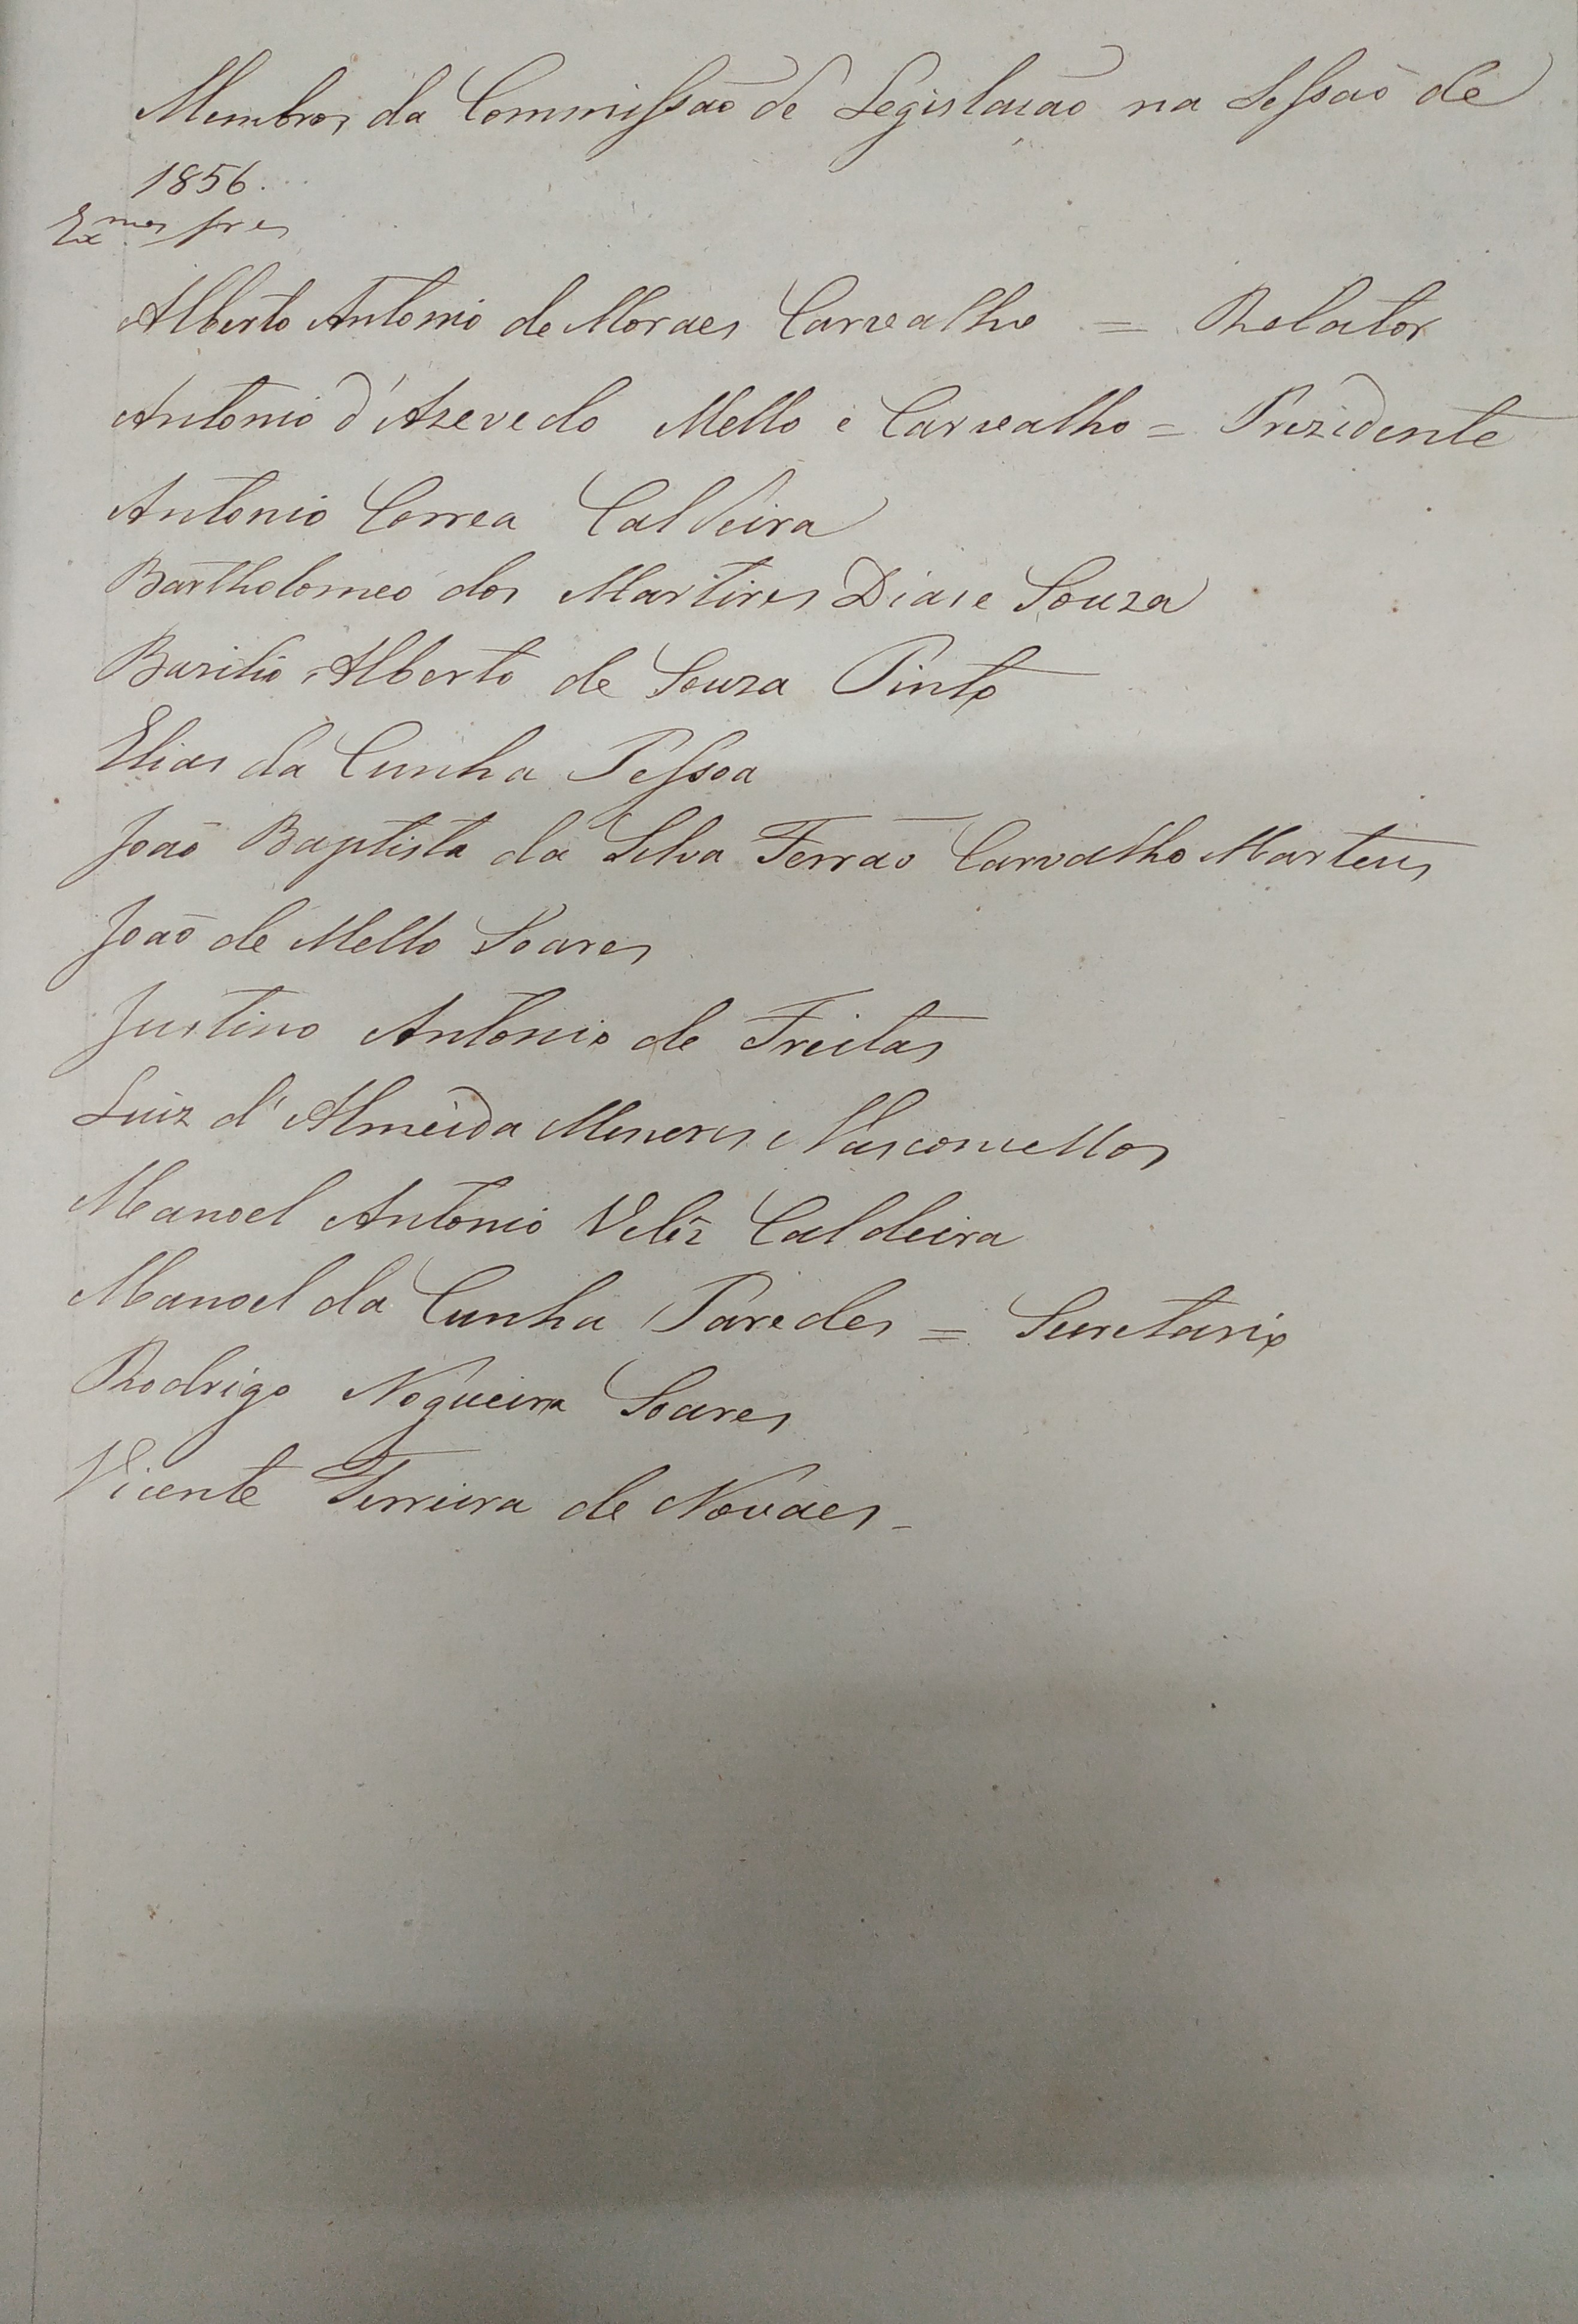 Membros da Comissão na sessão de 1856. Caderno de Atas da Comissão 1856-1857. Cota AHP: Secção I/II, cx. 274, mç. 209, doc. 1.